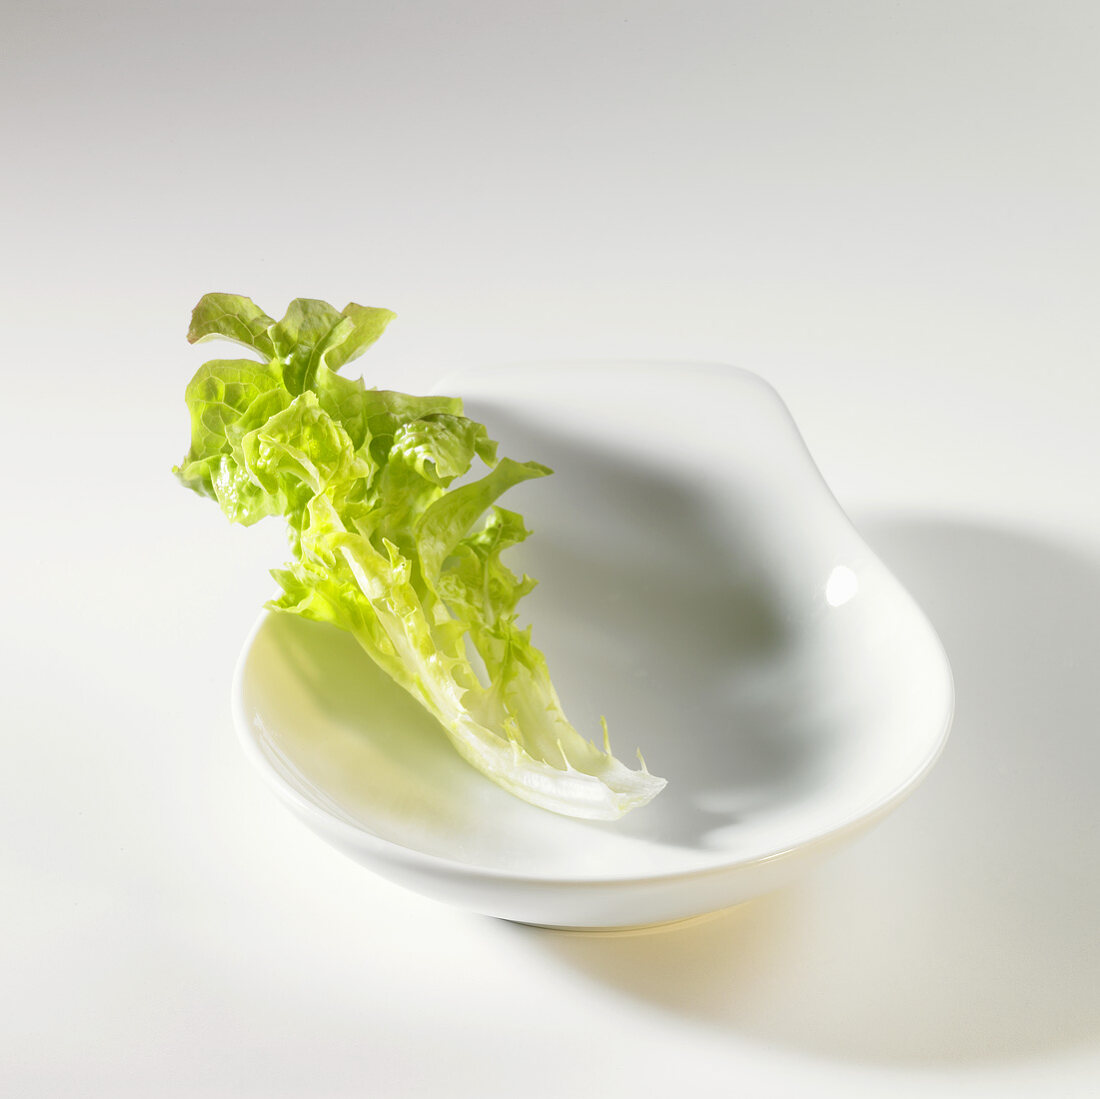 Salatblatt (Lollo Bianco) in weisser Schale